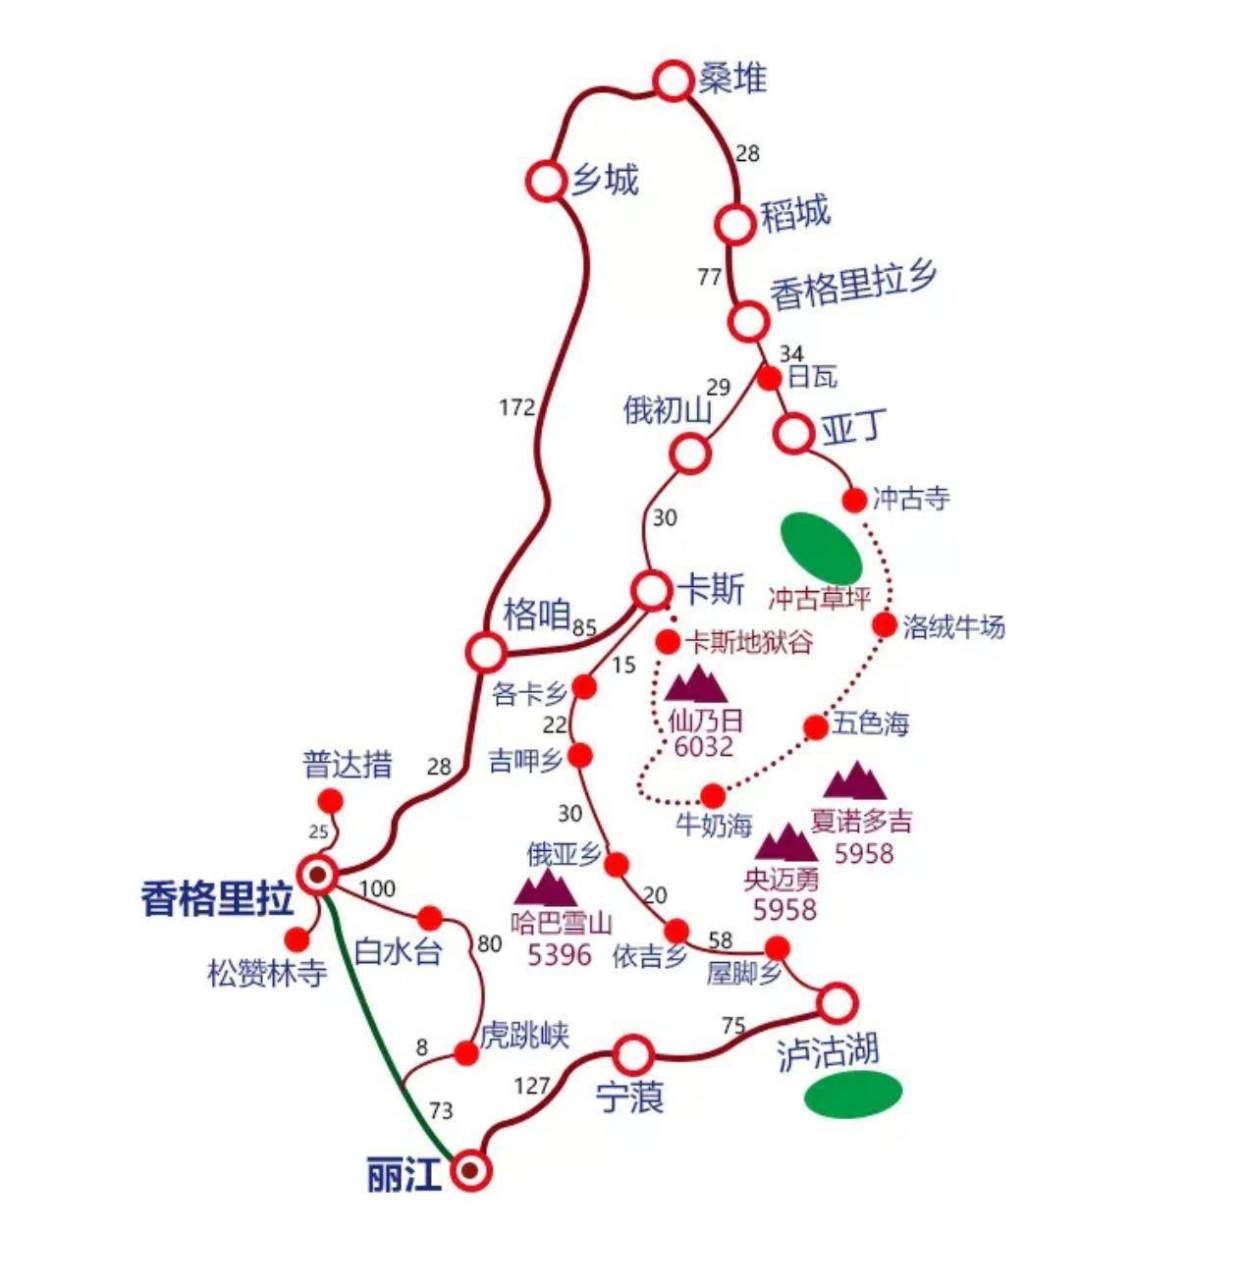 中国最美大环线:三大网红景点,旅行攻略已做好!